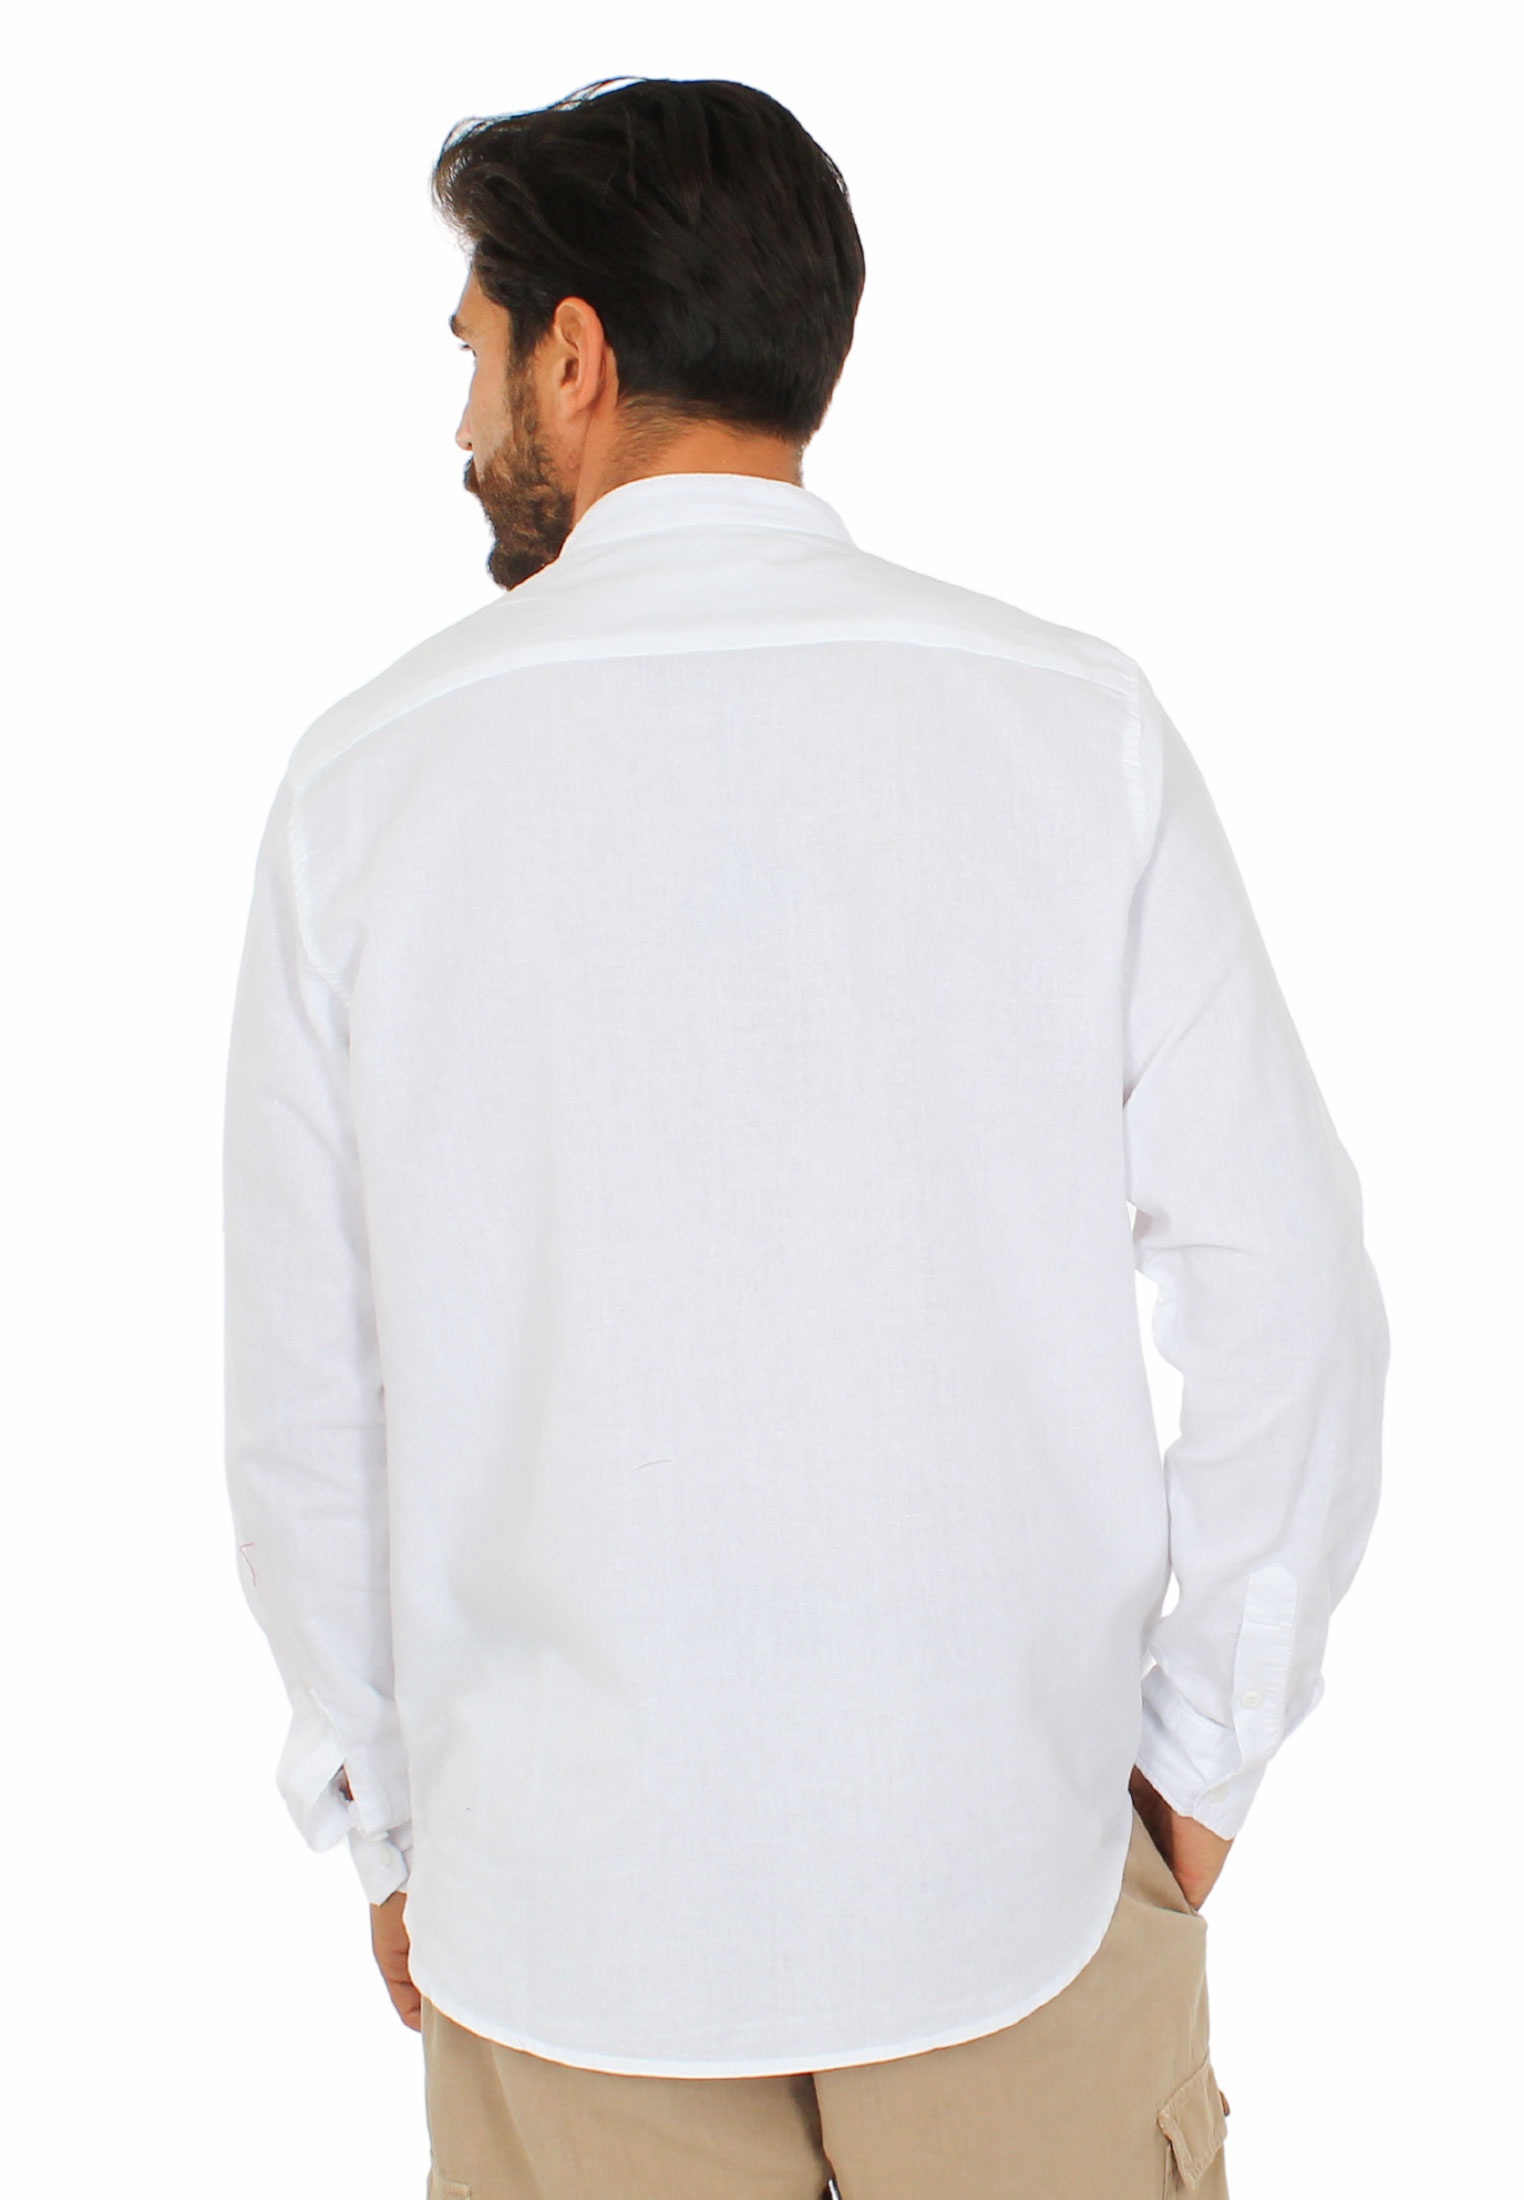 Camicia Uomo Collo Coreana Lino Slim Fit Manica Lunga Estiva Sartoriale Bianco 